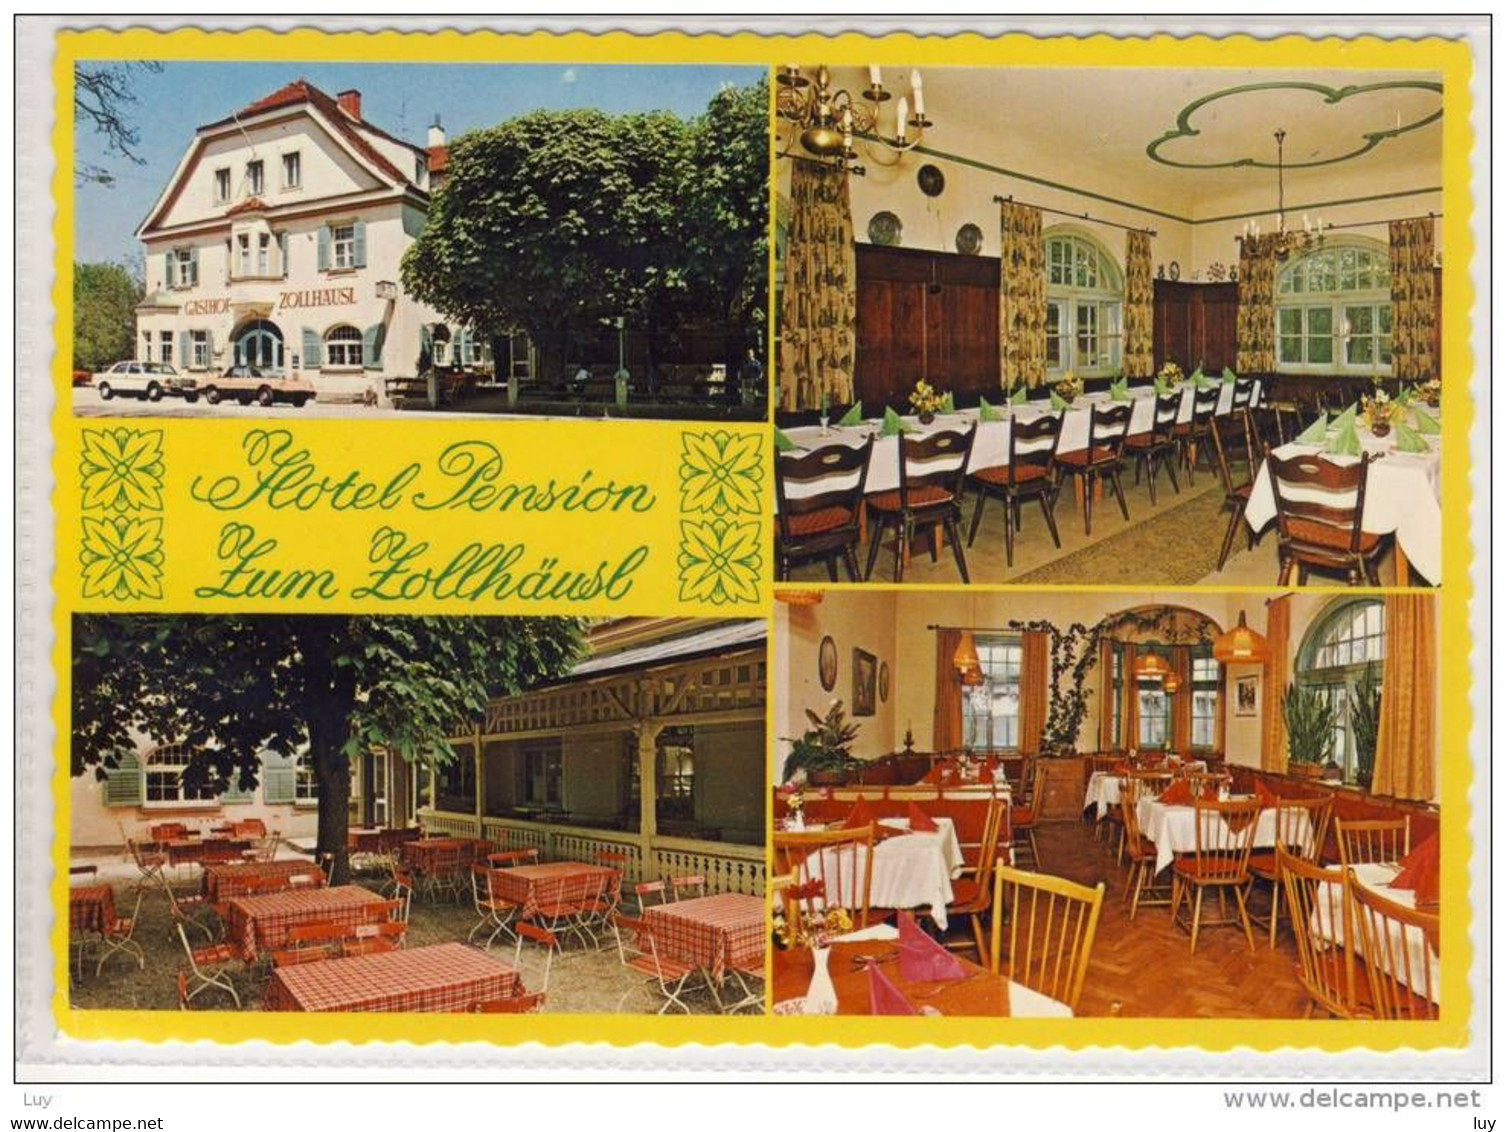 FREILASSING - Hotel Pension "ZUM ZOLLHÄUSL" - Freilassing